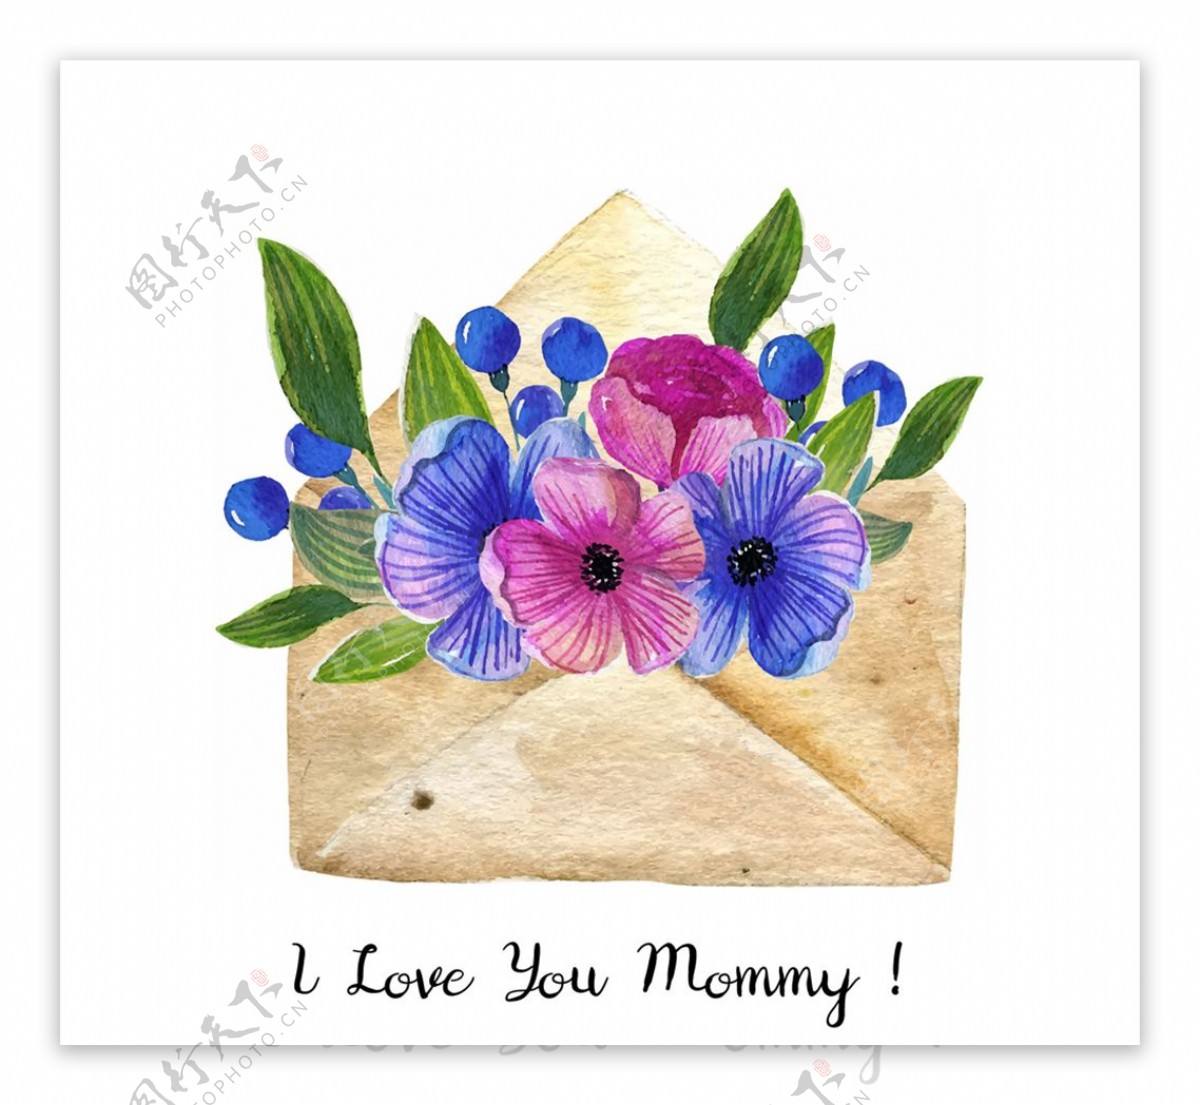 彩绘母亲节装满花卉的信封矢量图